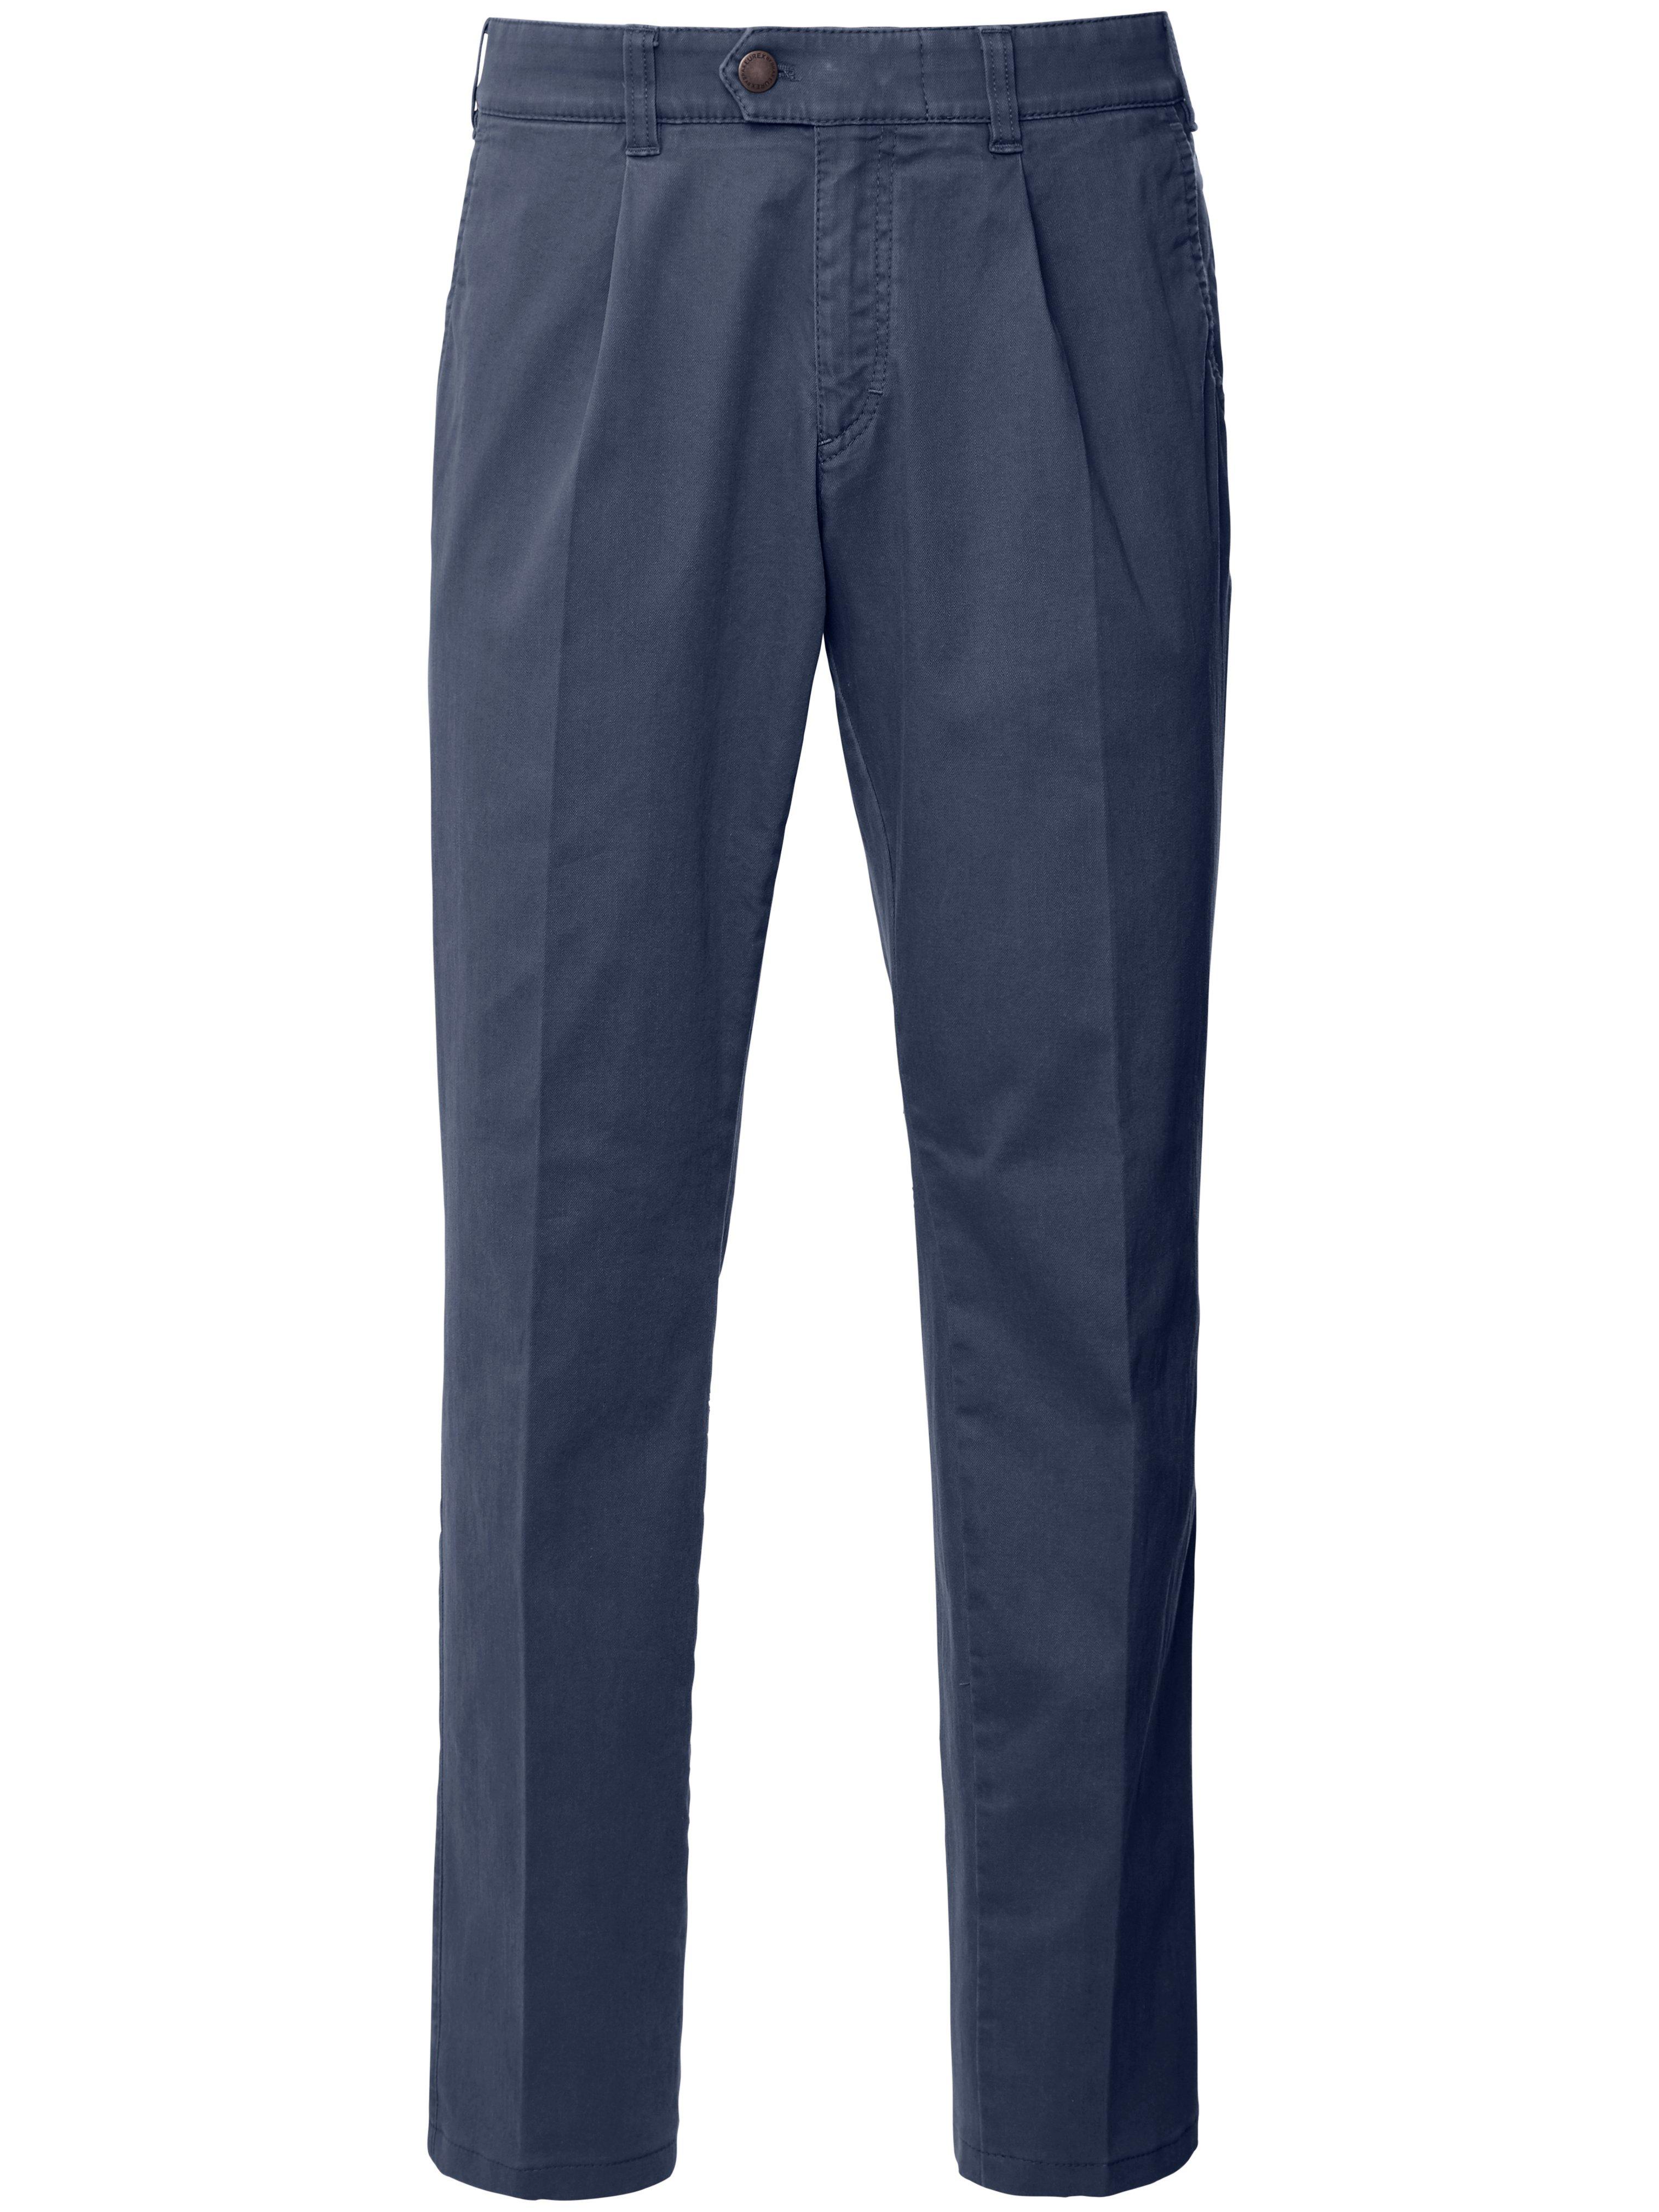 Le pantalon à pinces  Eurex by Brax bleu